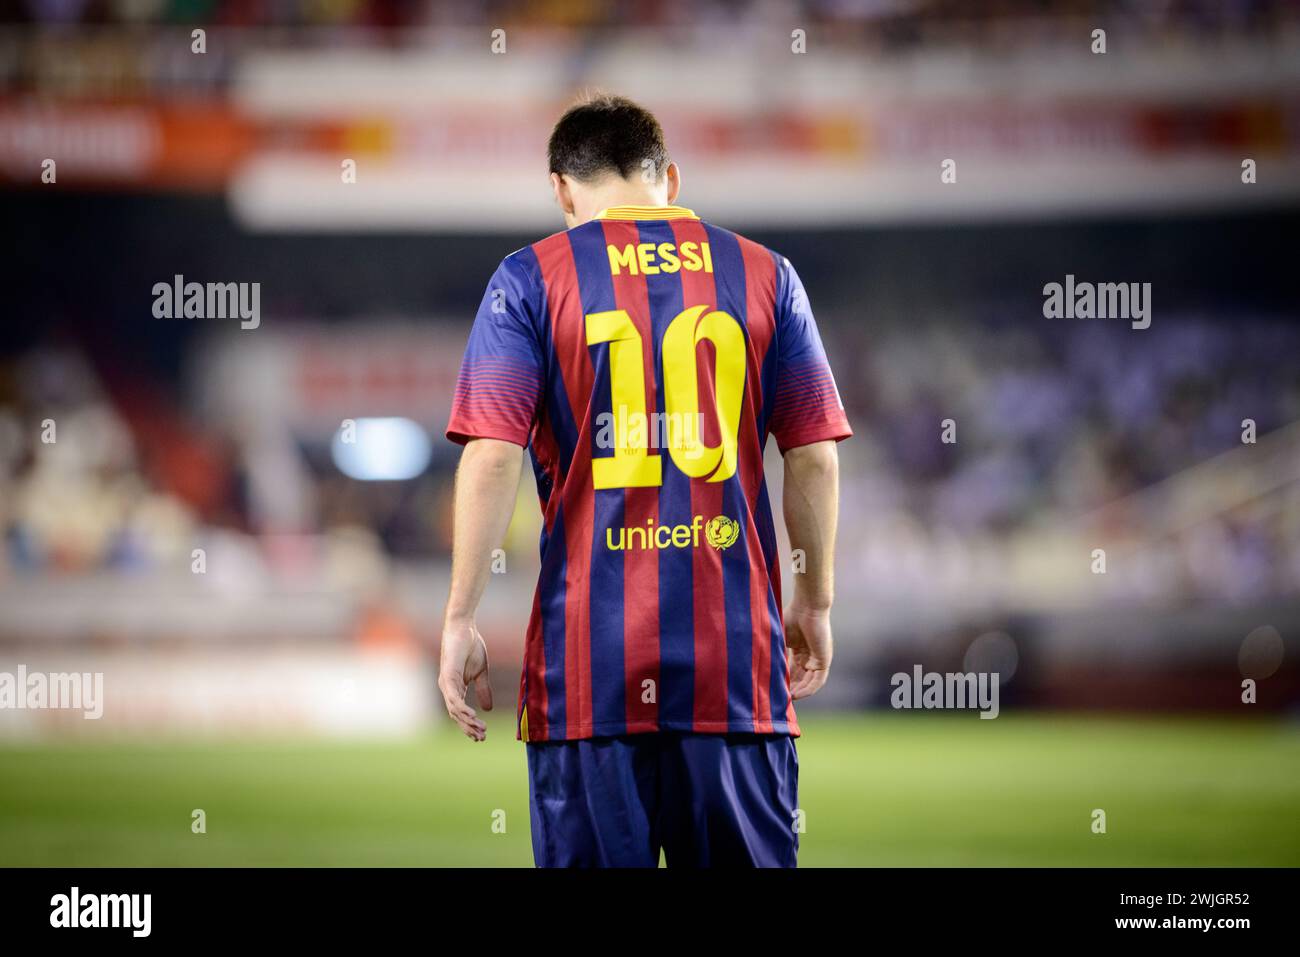 Ritratto sul retro del giocatore argentino Lionel messi durante una partita con la maglia numero 10 del Barcellona, allo stadio Mestalla di Valencia, Spagna. Foto Stock